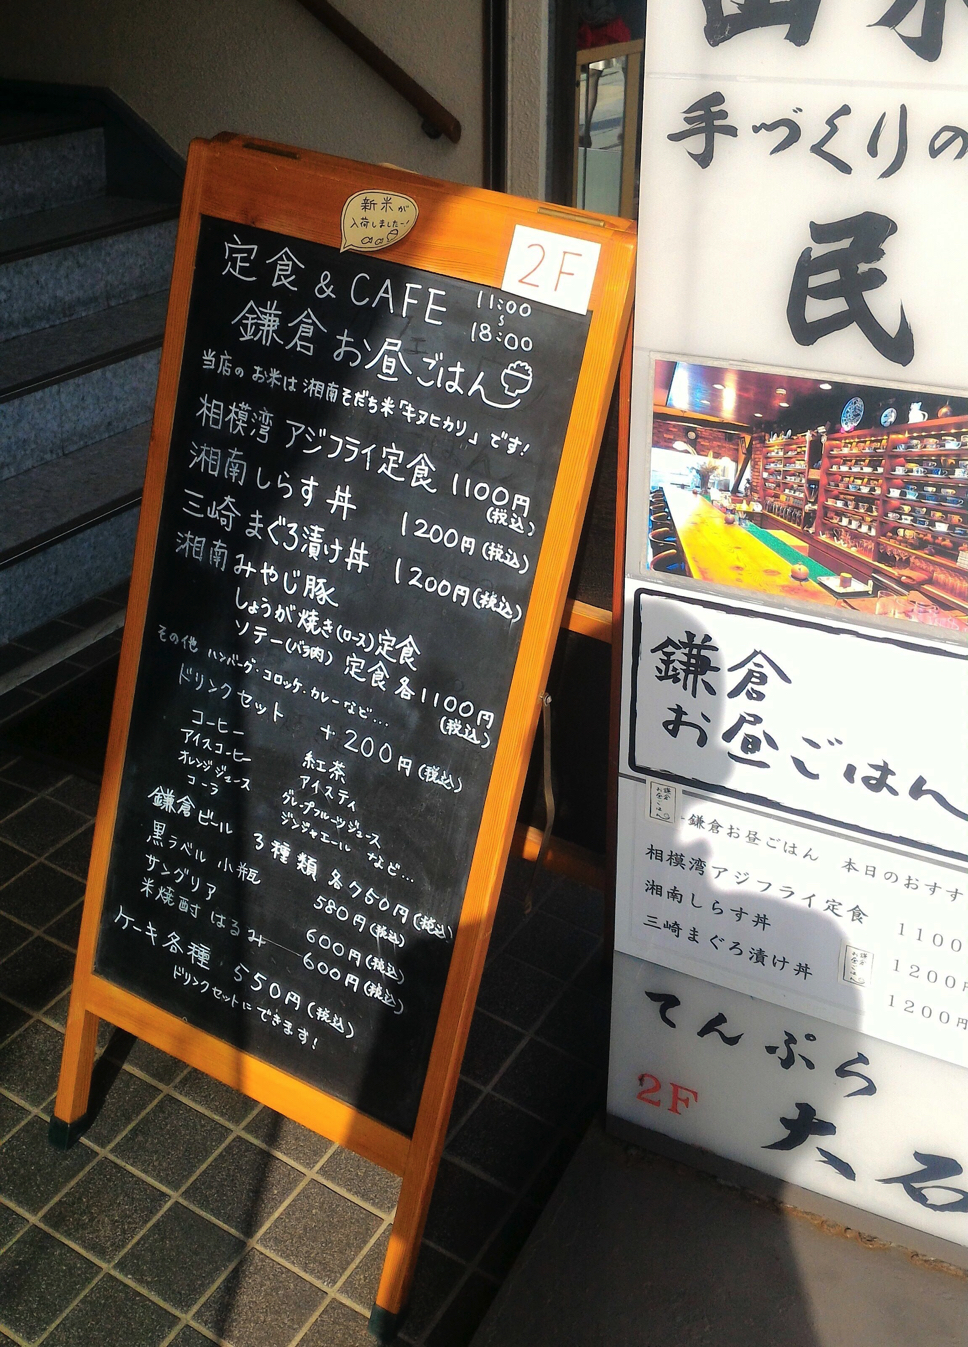 やっぱり鎌倉は、面白い。小さきお店たちの町並み。